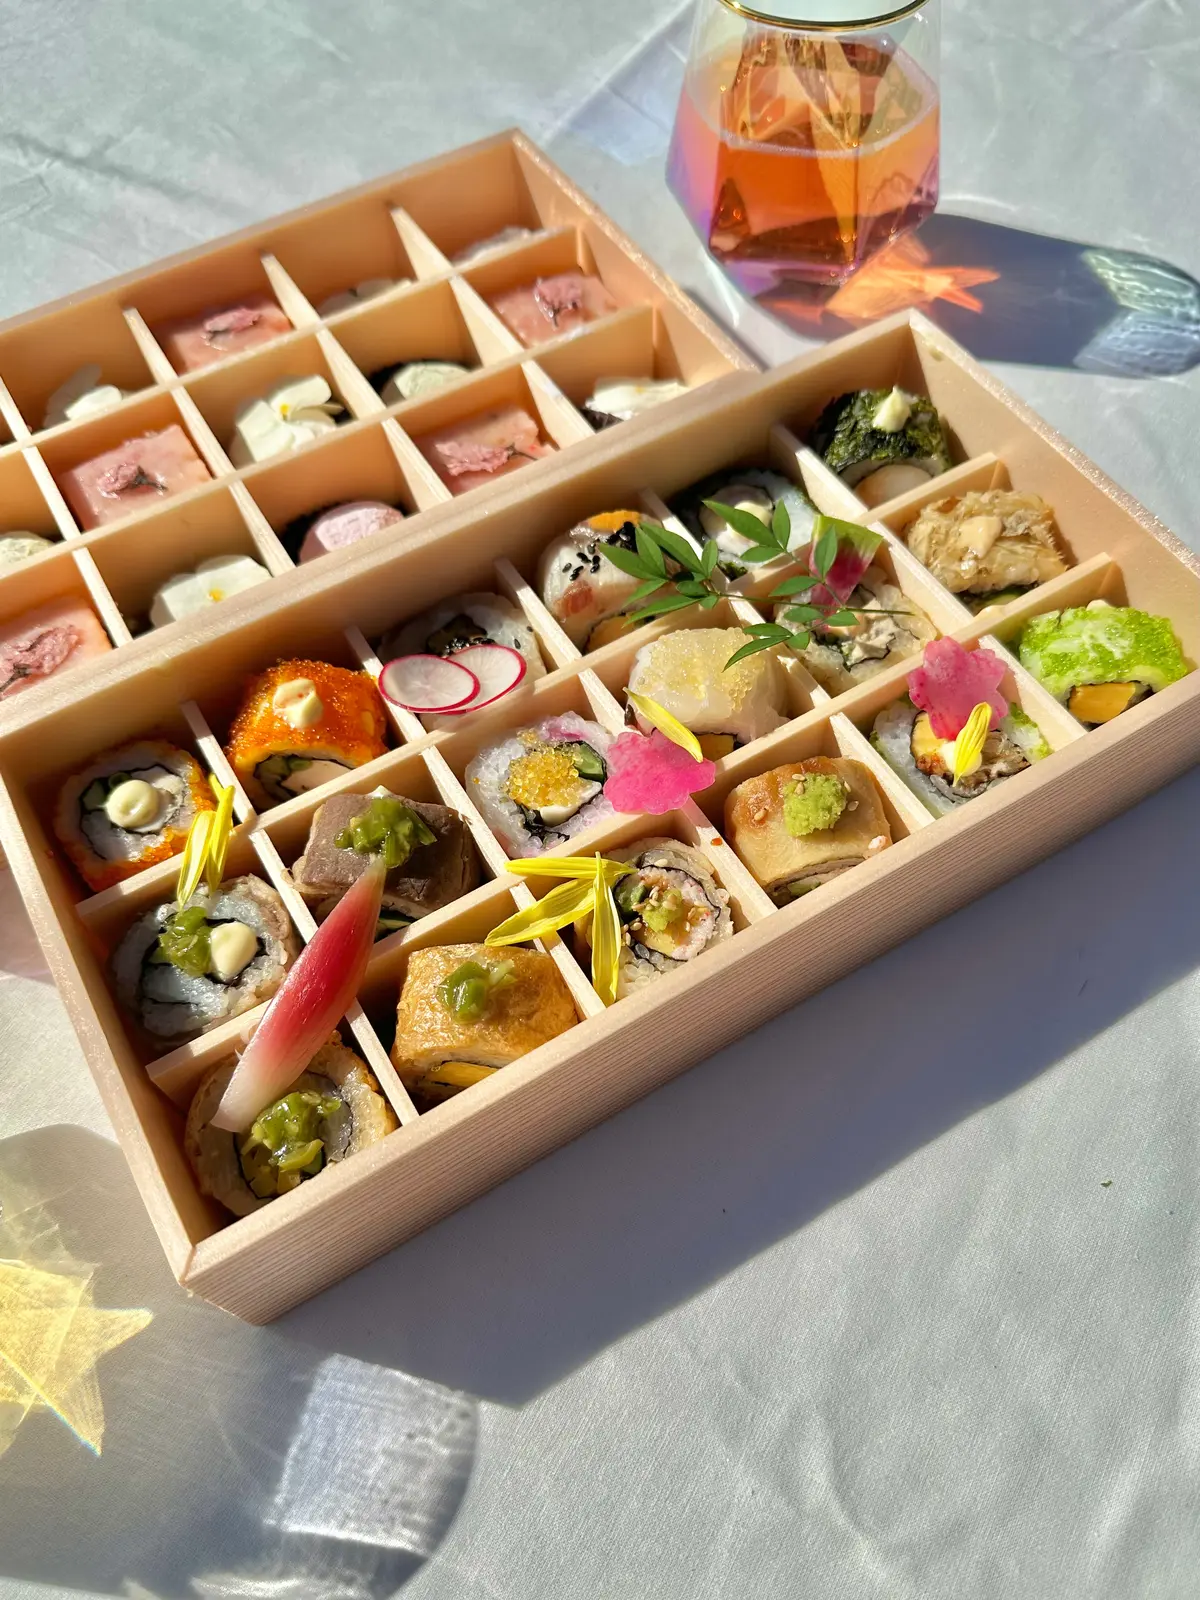 銀座「SHARI THE TOKYO SUSHI BAR」のロール寿司とスイーツが並ぶ“お花畑弁当”で楽しむ春のお花見